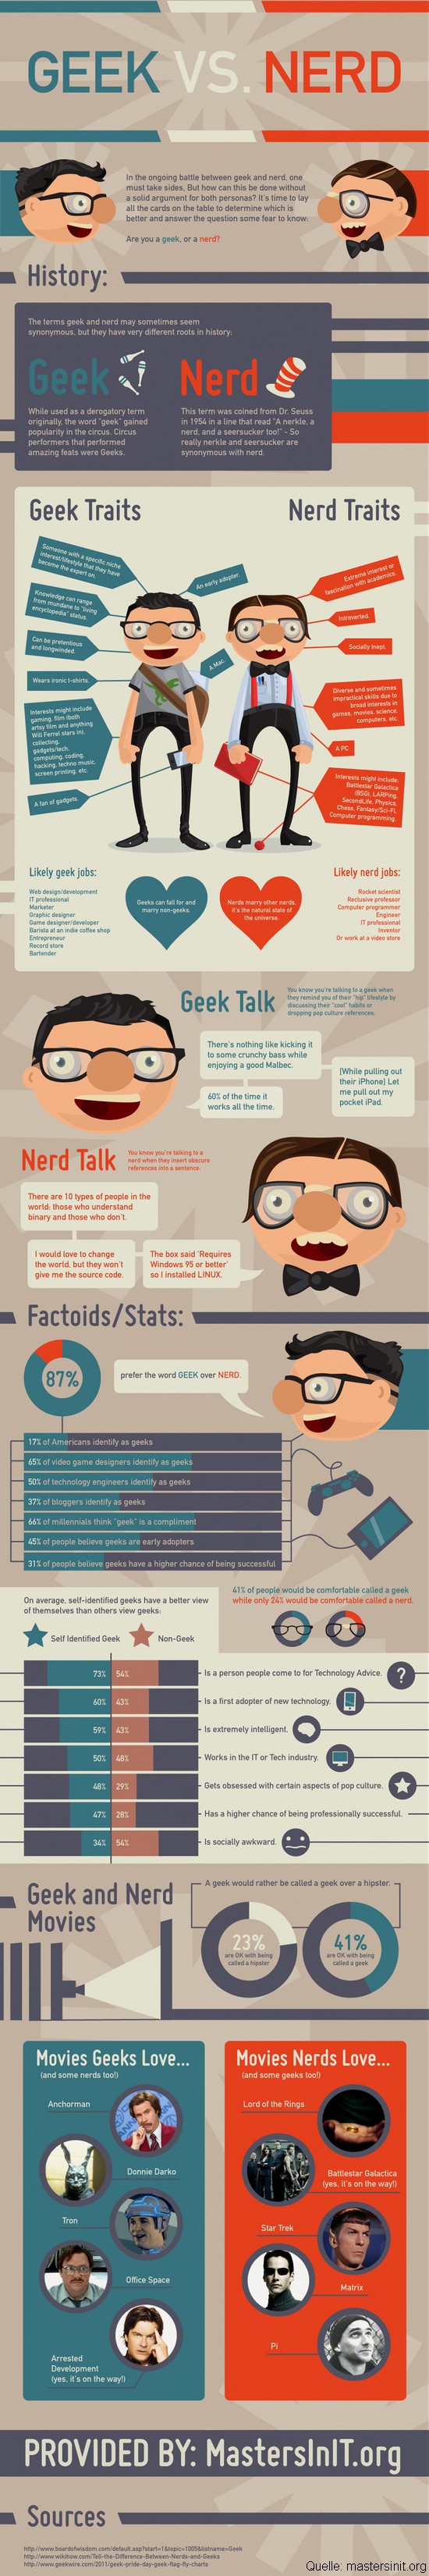 Der Vergleich: Geeks versus Nerds